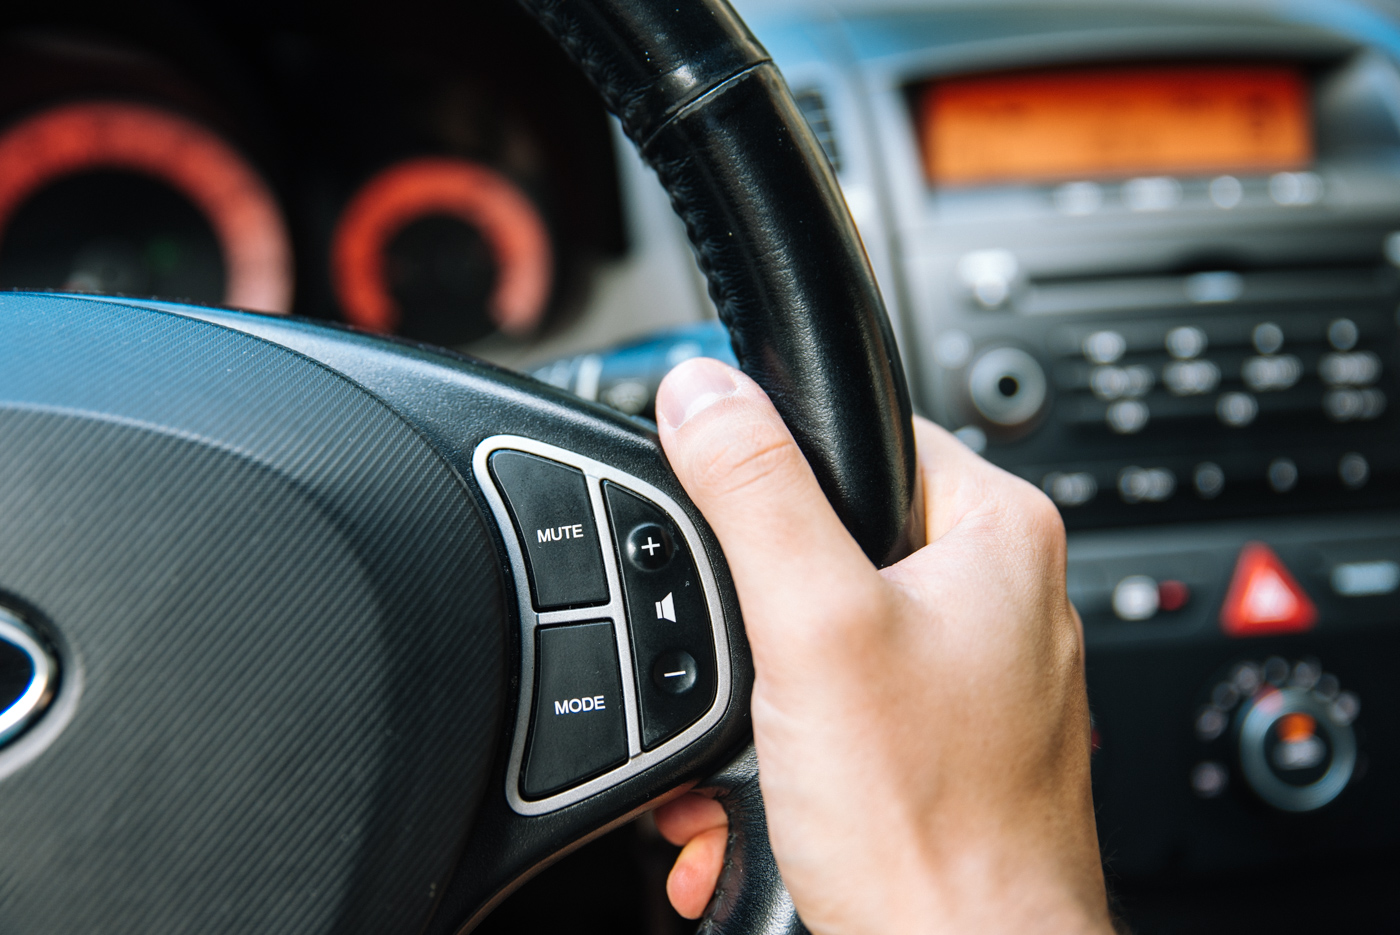 Звук исходит из автомобильных динамиков, и мы можем регулировать громкость с помощью ручек и кнопок в автомобиле